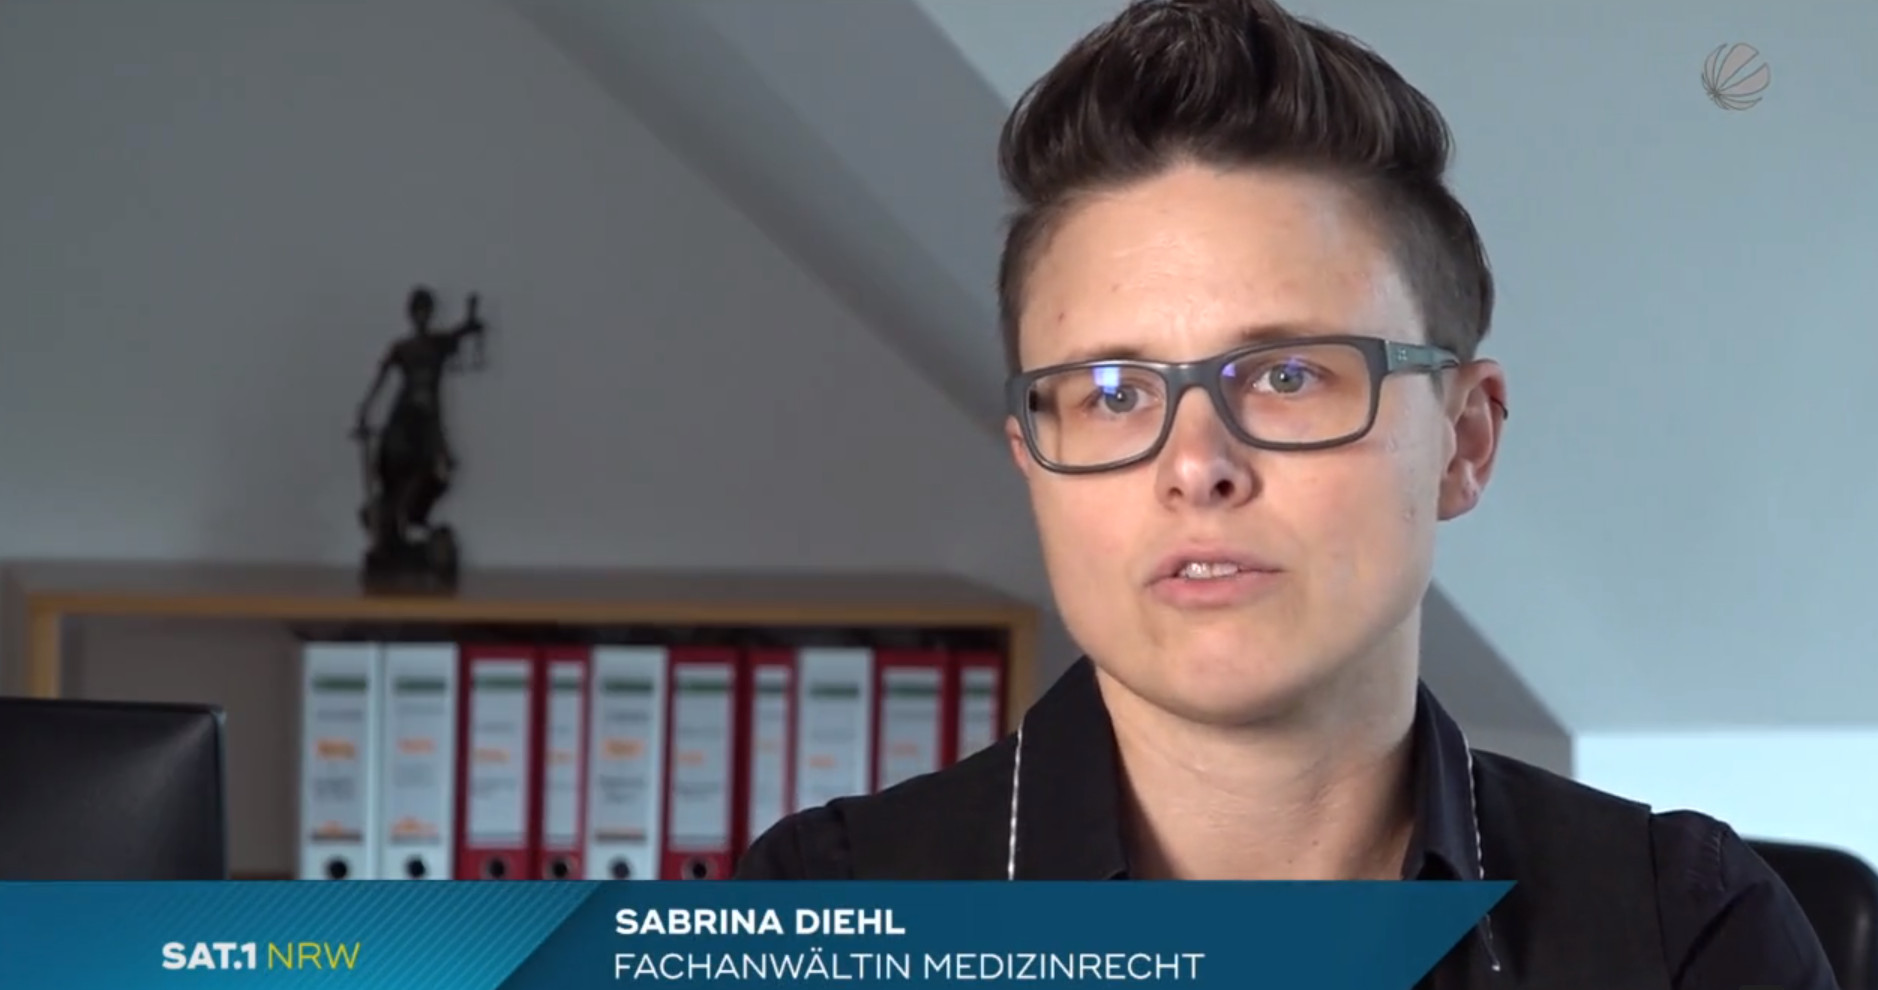 Sat 1 NRW vom 26.08.2020 Patient durch falsches Medikament gestorben Sabrina Diehl Medizinrecht Herne